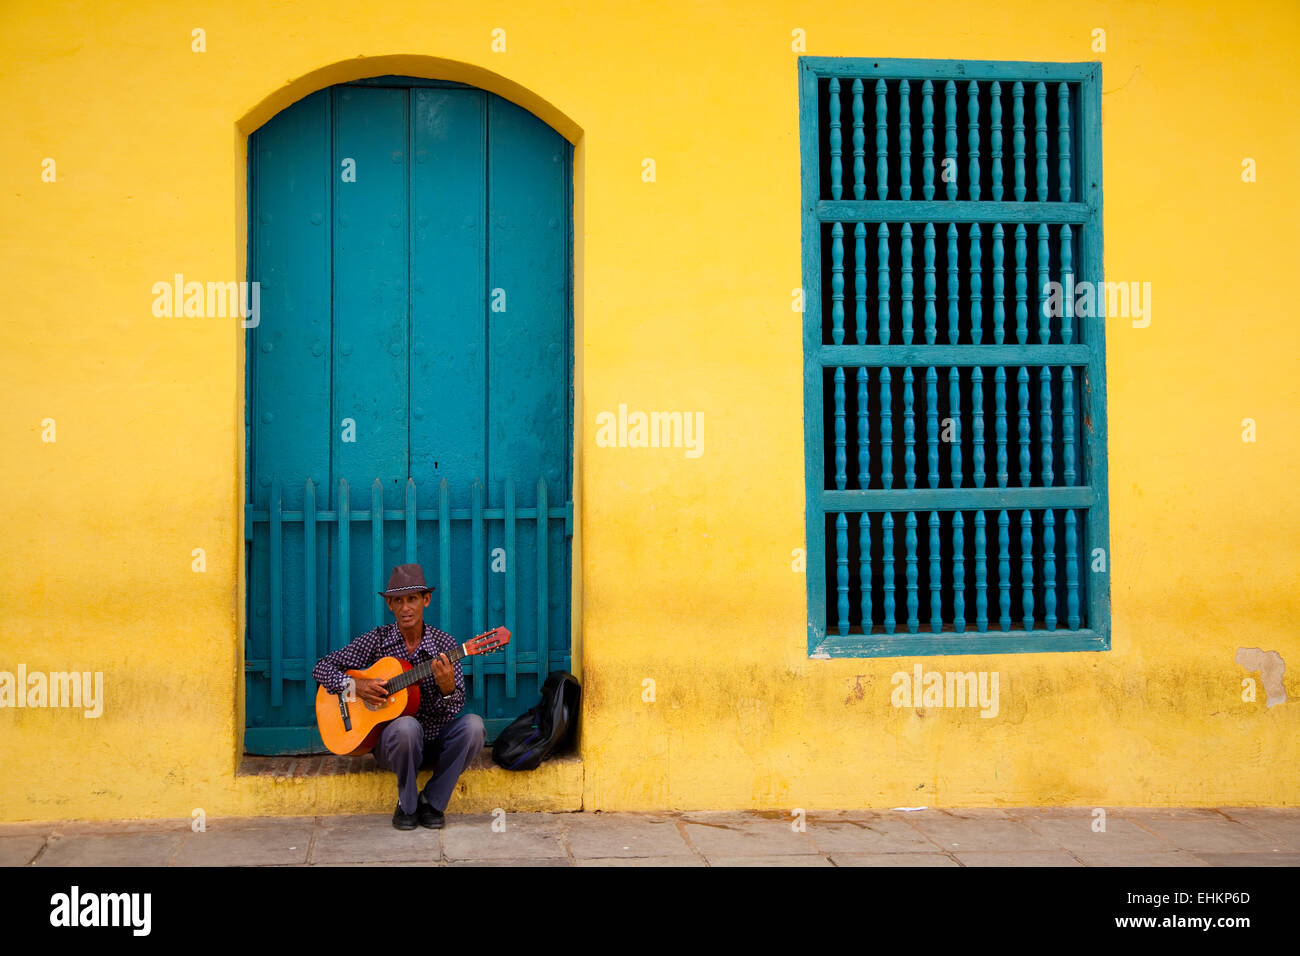 Un homme joue de la guitare à Trinidad, Cuba Banque D'Images